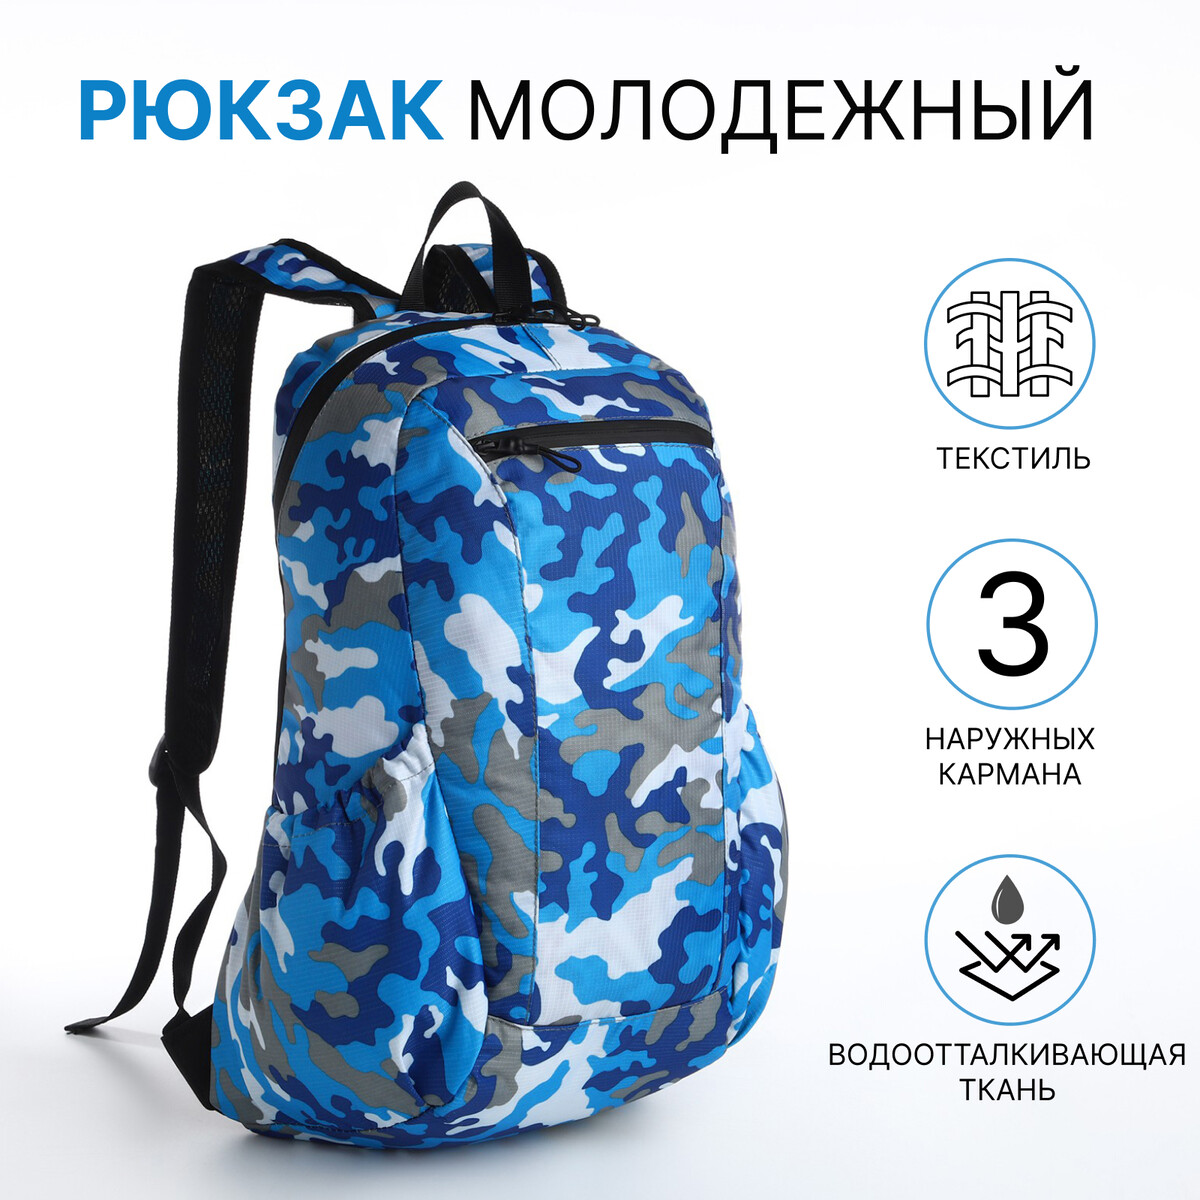 Рюкзак молодежный, водонепроницаемый на молнии, 3 кармана, цвет голубой/синий рюкзак молодежный на молнии 4 кармана синий